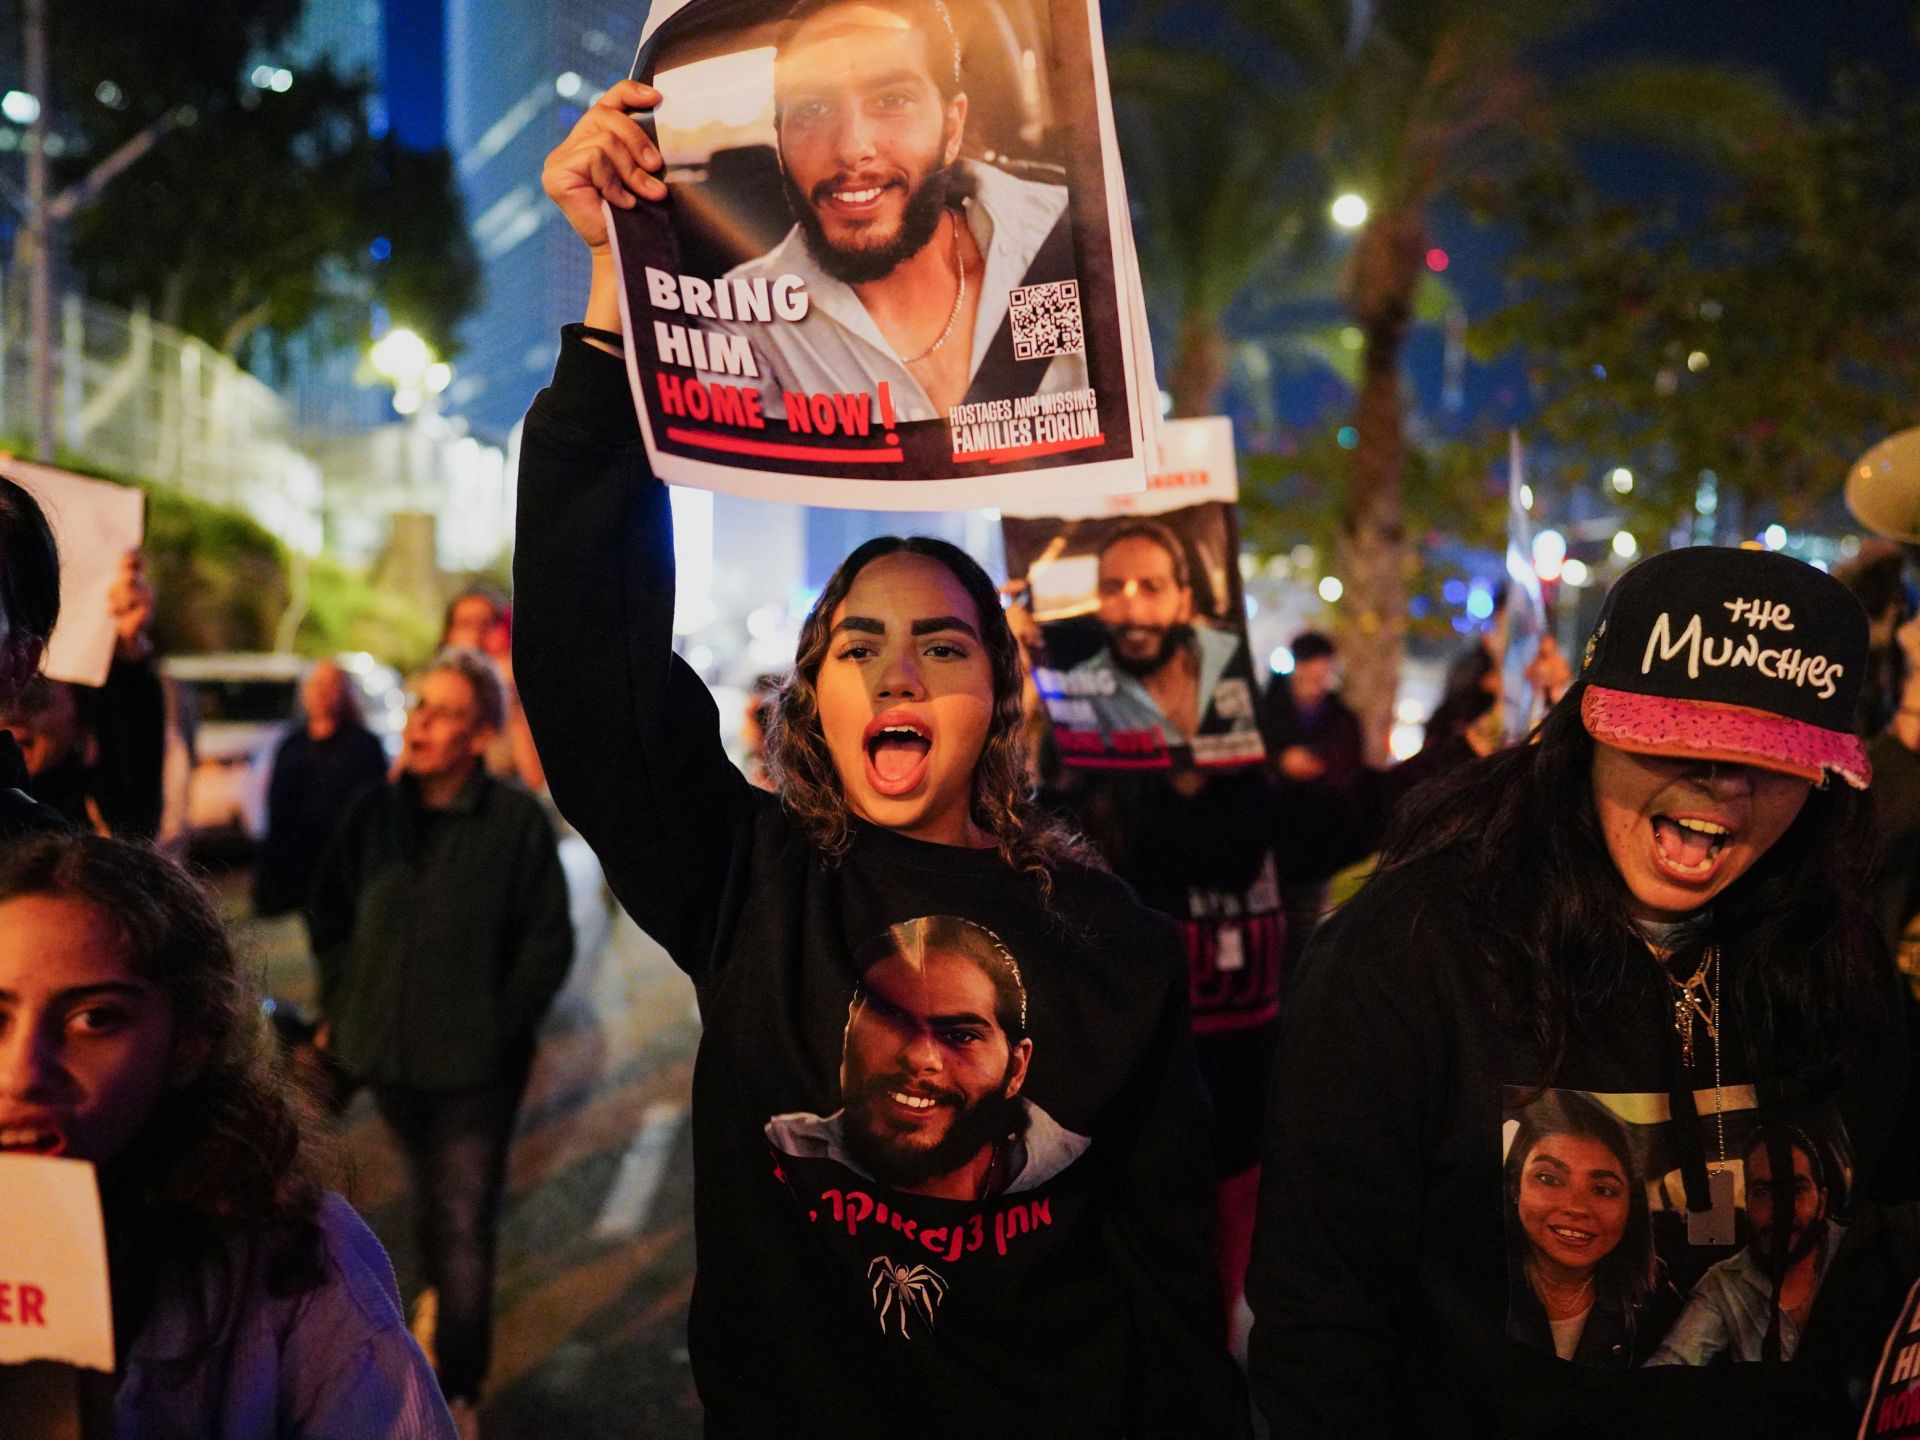 مظاهرات في تل أبيب للمطالبة بإعادة الأسرى وإسقاط حكومة نتنياهو | أخبار – البوكس نيوز